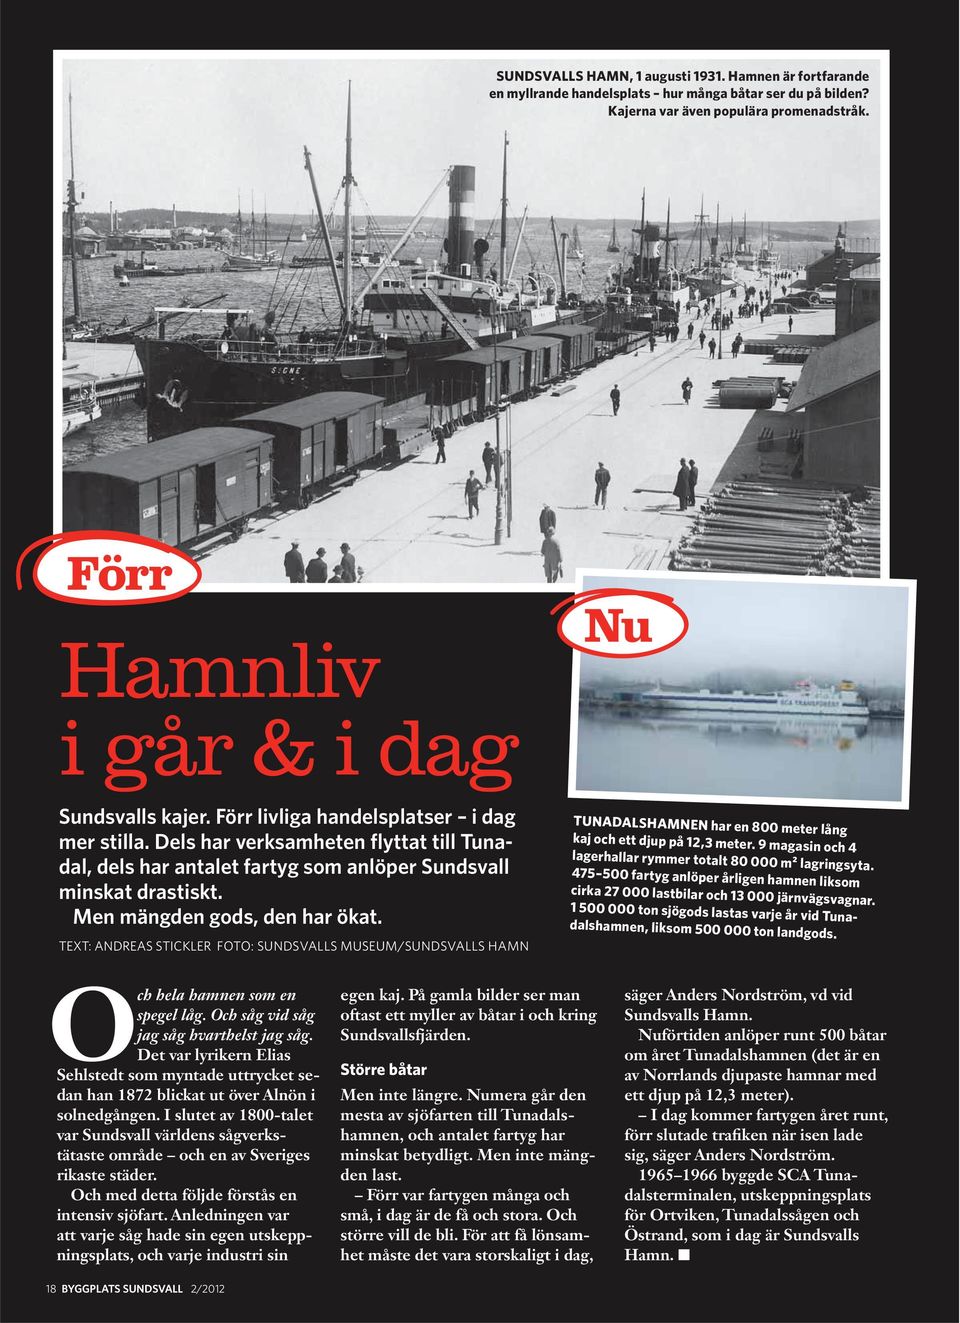 Dels har verksamheten flyttat till Tunadal, dels har antalet fartyg som anlöper Sundsvall minskat drastiskt. Men mängden gods, den har ökat.